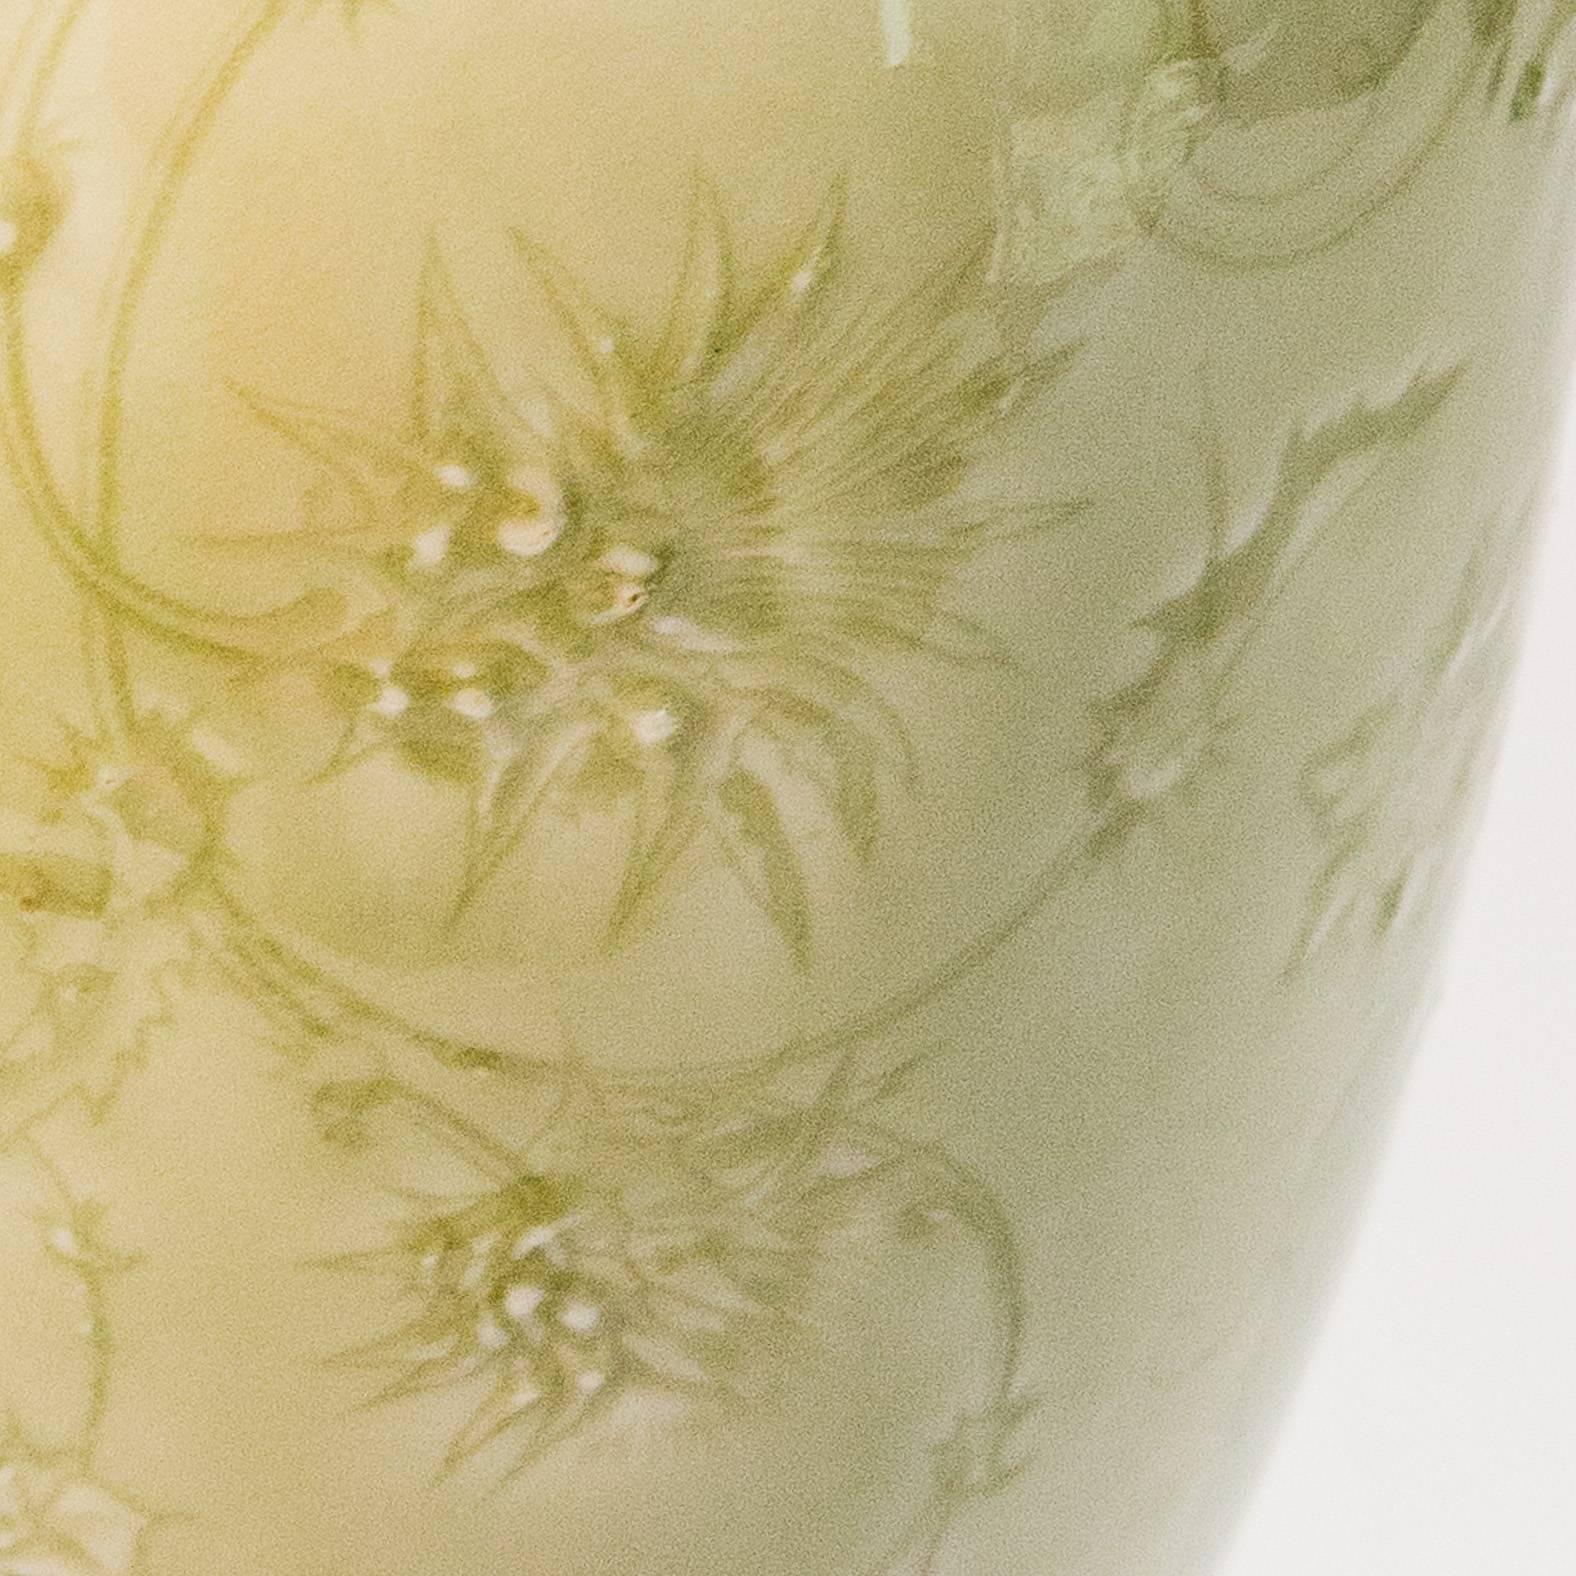 Carrier Belleuse and Sevres Porcelain Vase 1